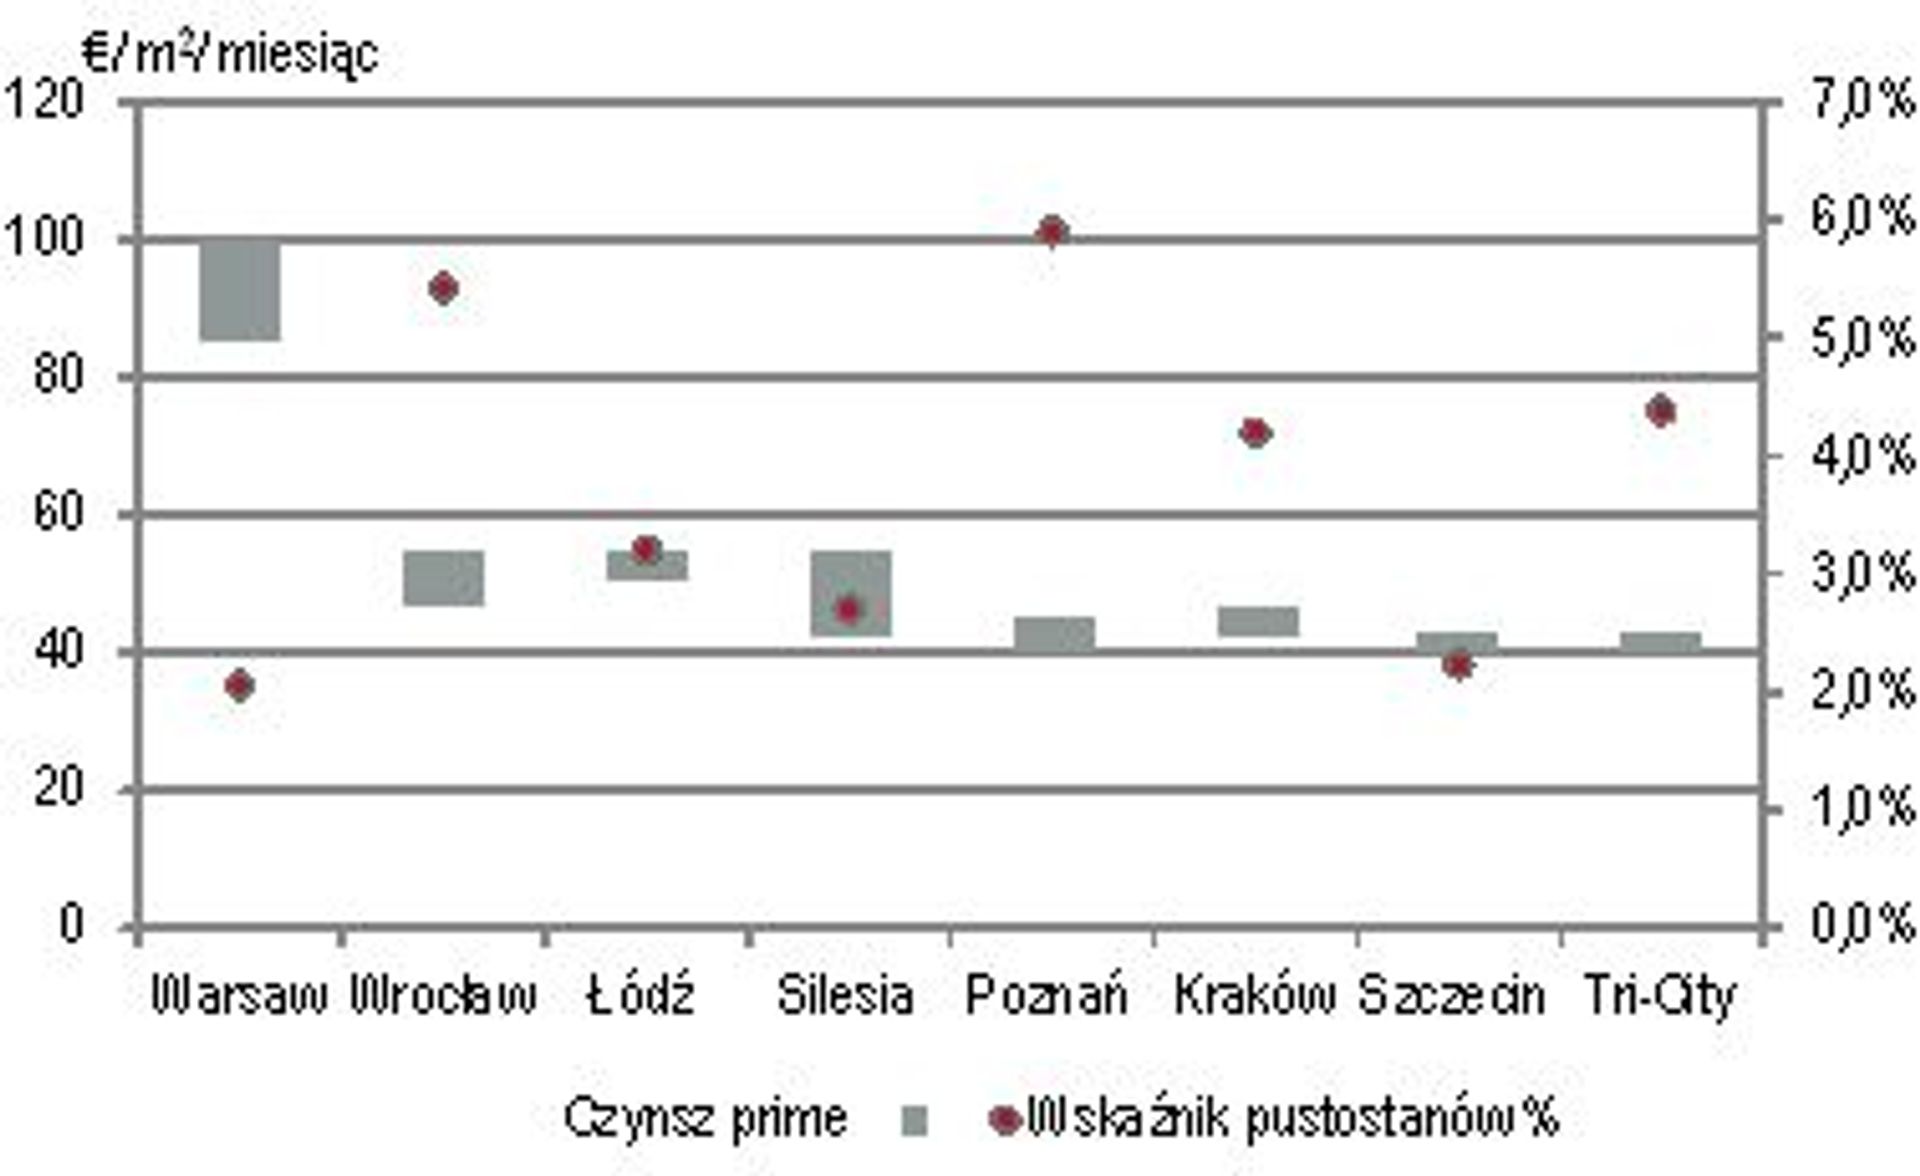  Intensywny koniec roku na polskim rynku nieruchomości handlowych